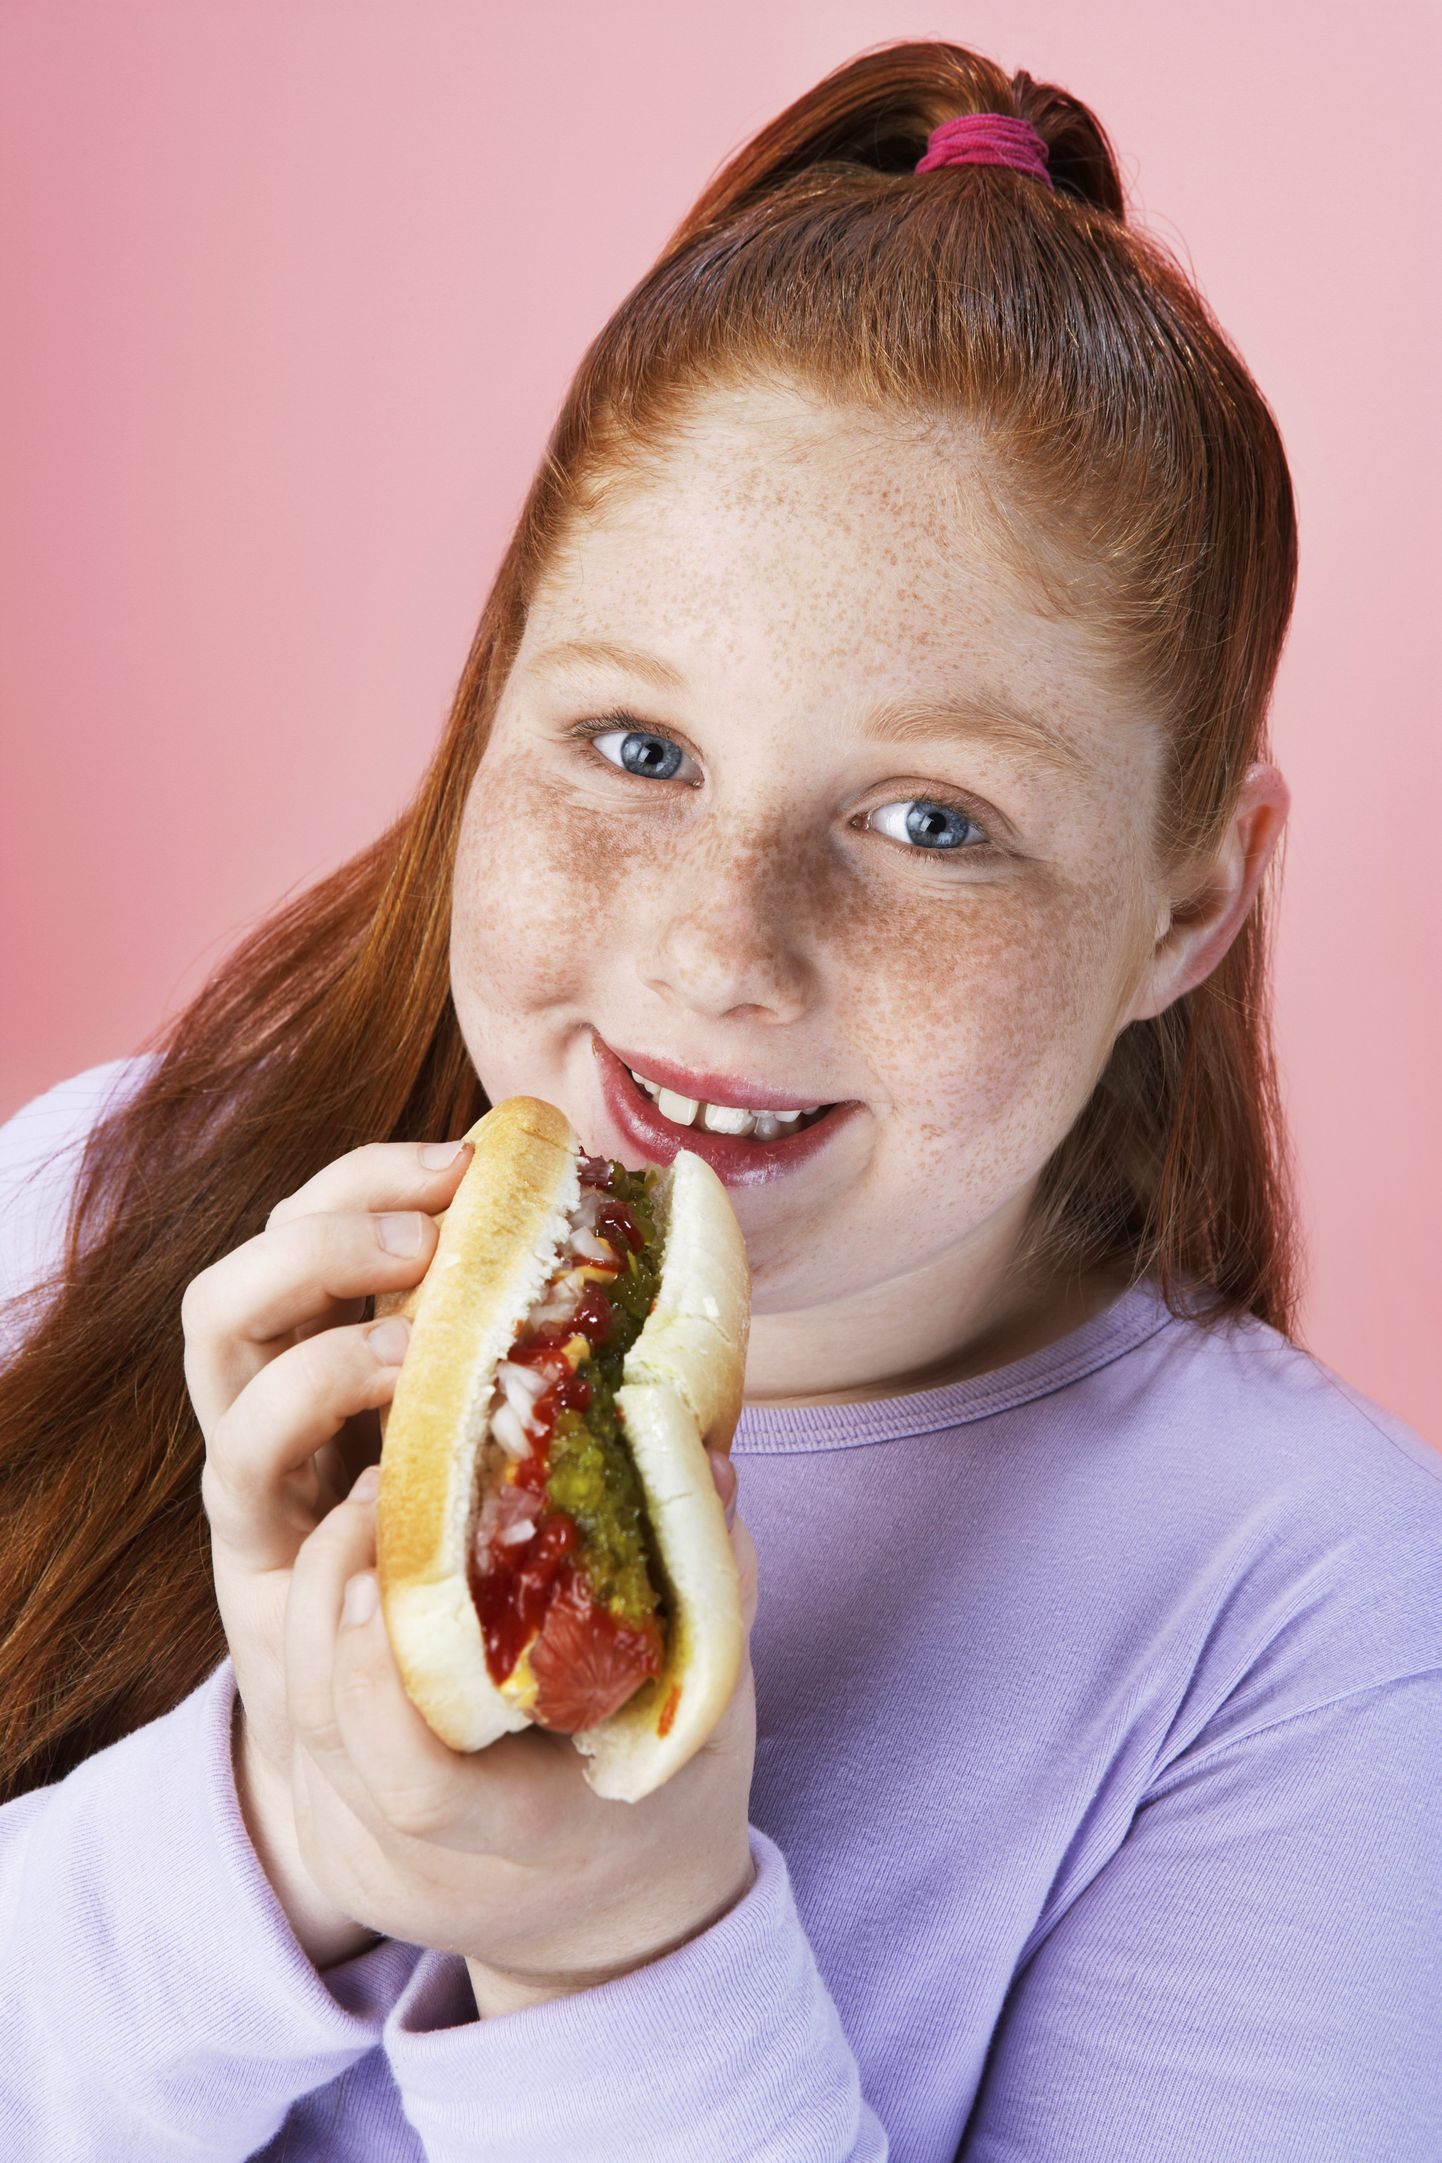 Latearstide sõnul on paljude laste ülekaalulisuse põhjuseks valed toitumis- ja liikumisharjumused.